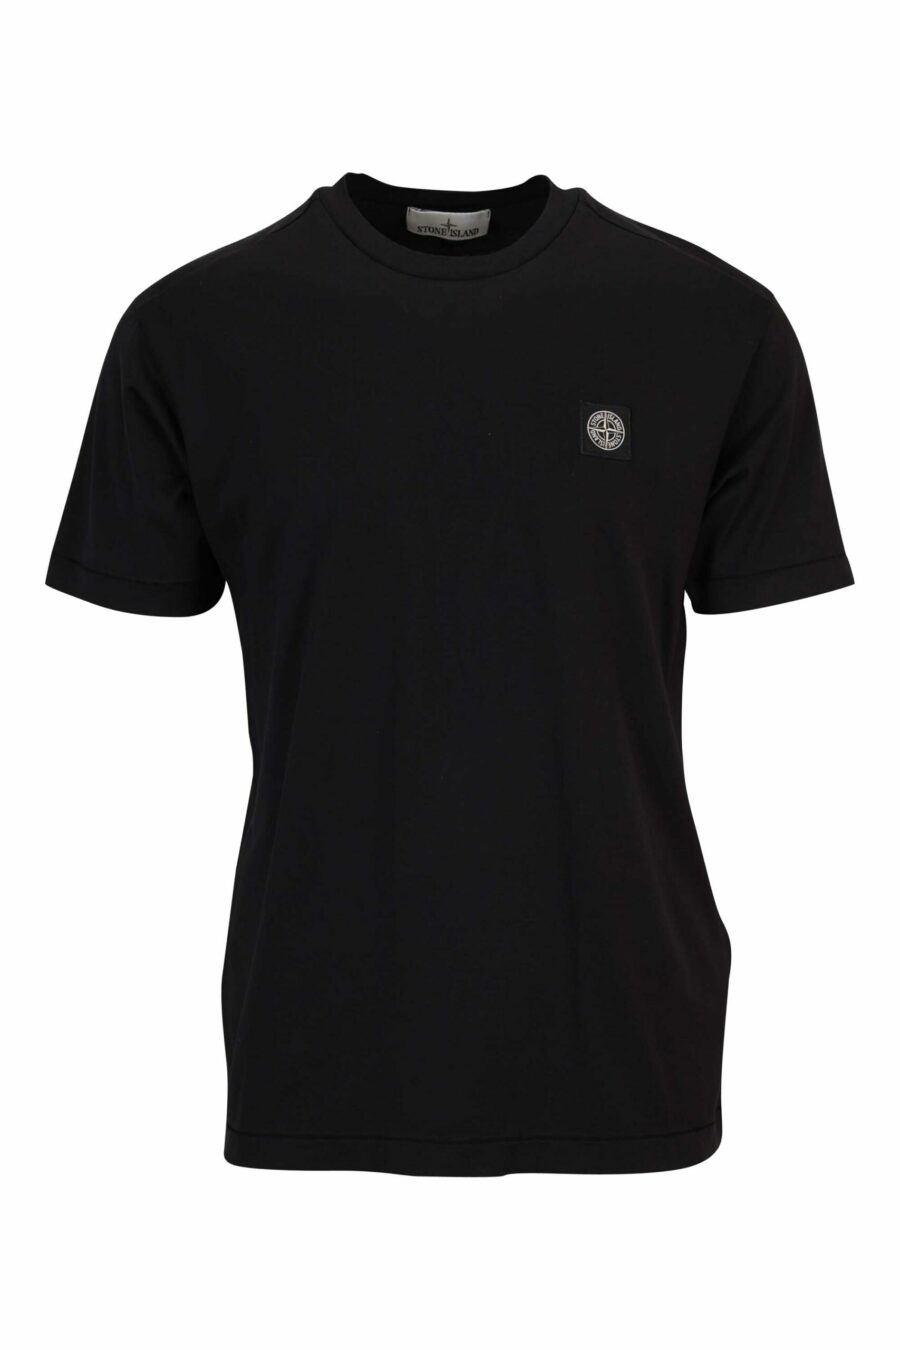 Camiseta negra con minilogo parche brújula - 8052572851964 scaled